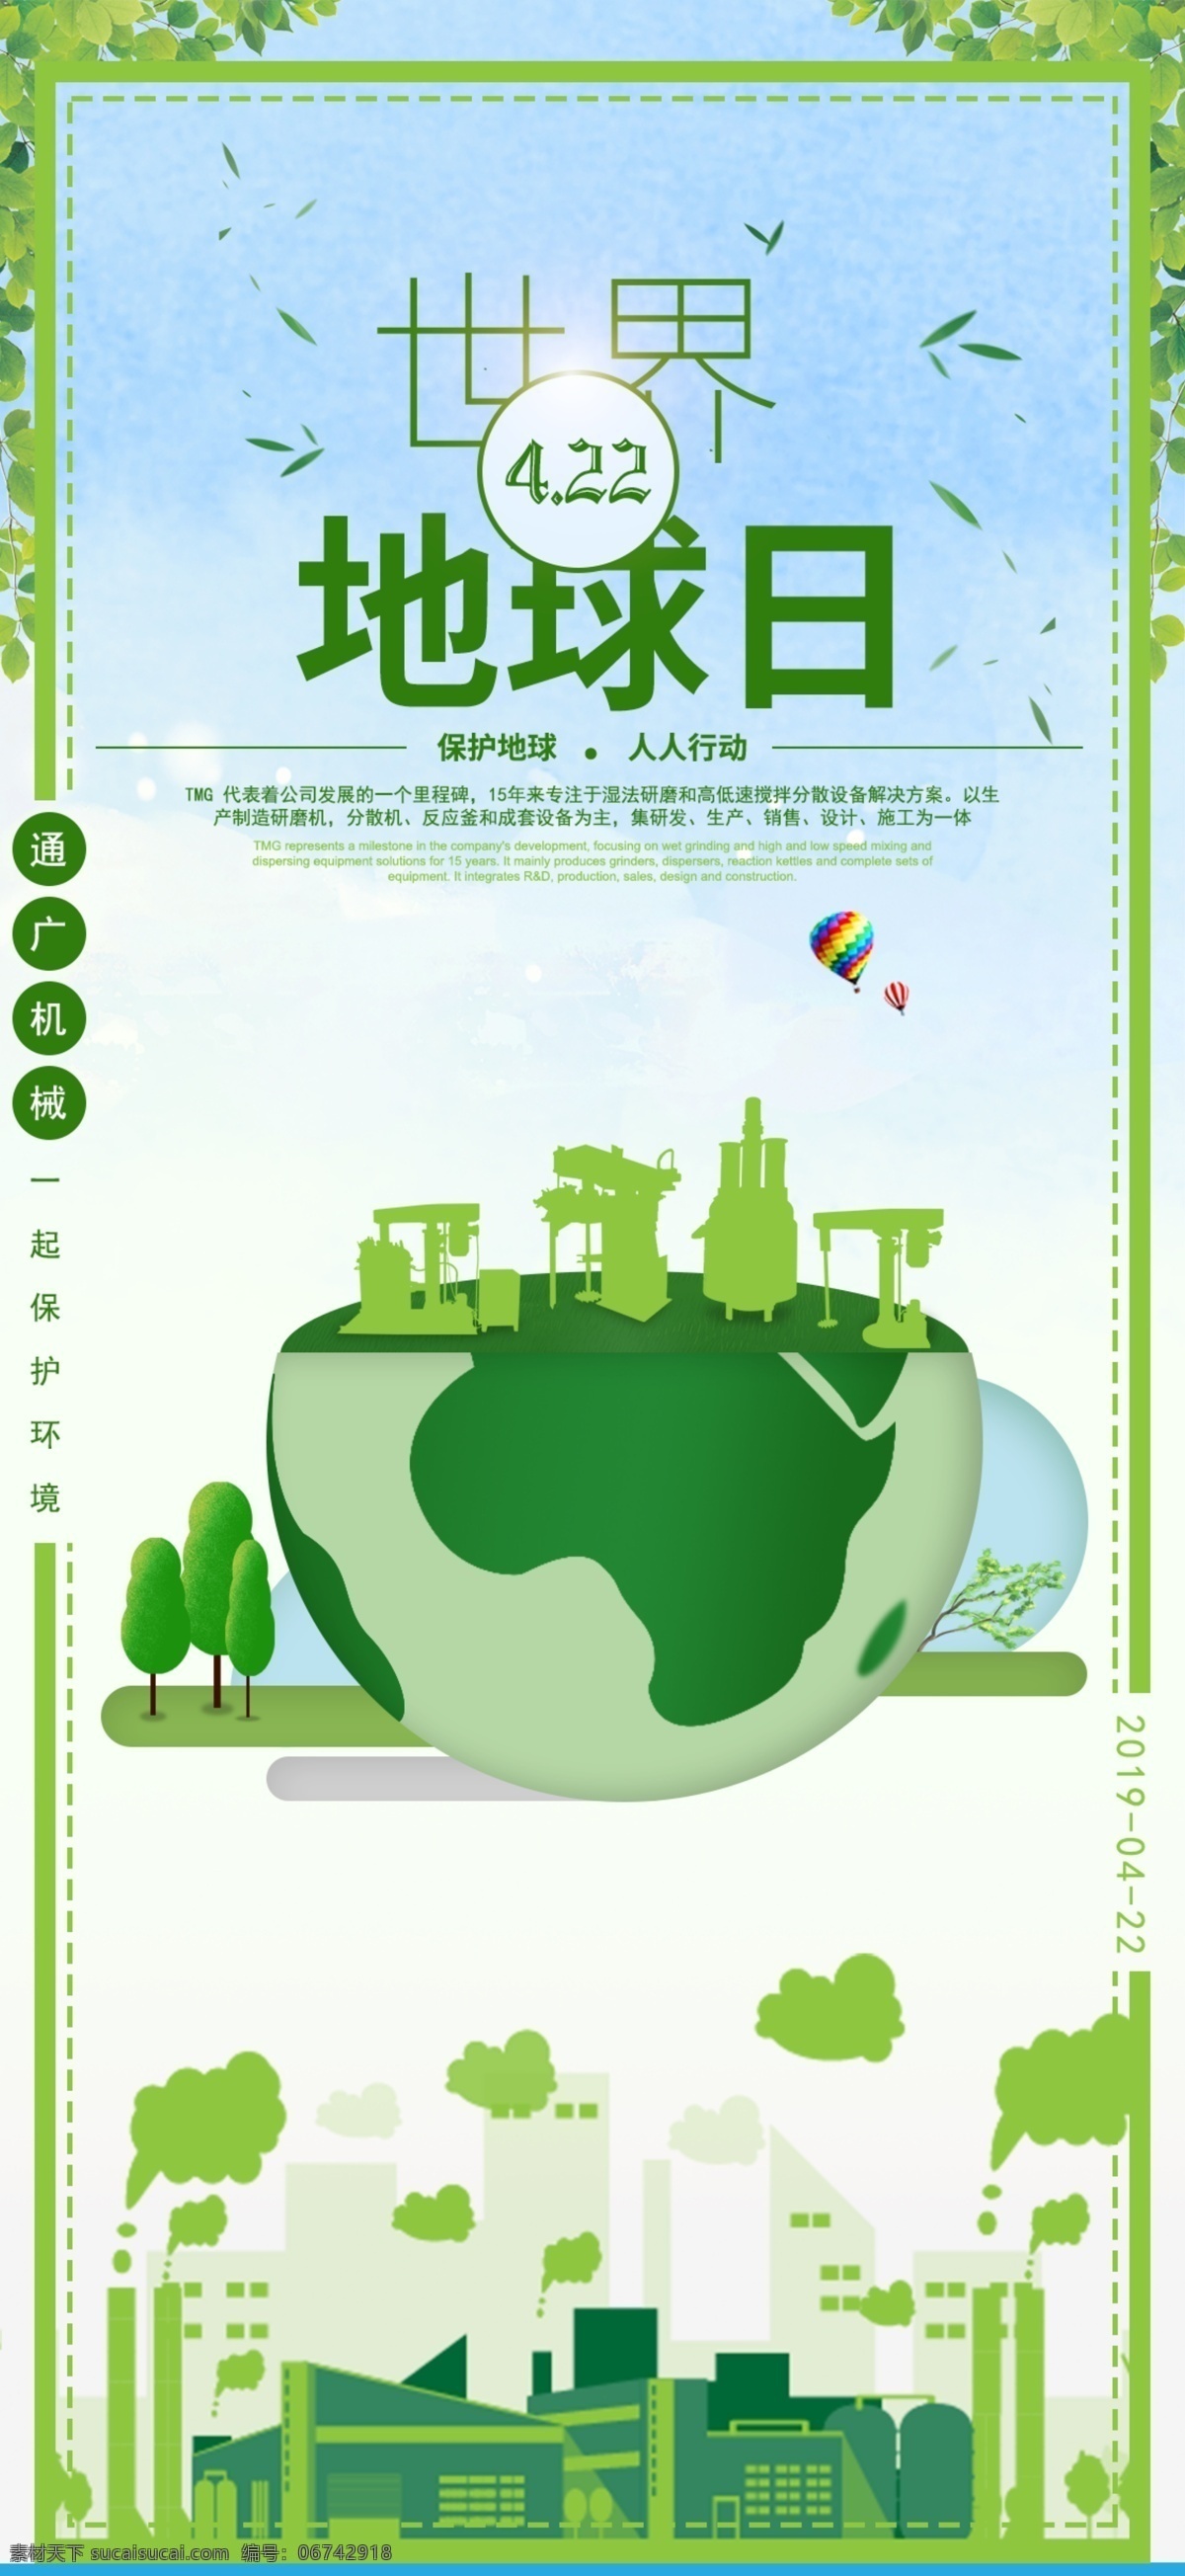 月 日 地球日 绿色海报 地球 化工工厂 矢量图 树叶 节日海报 4月22日 化工海报 环保 保护环境 绿色环保 分层